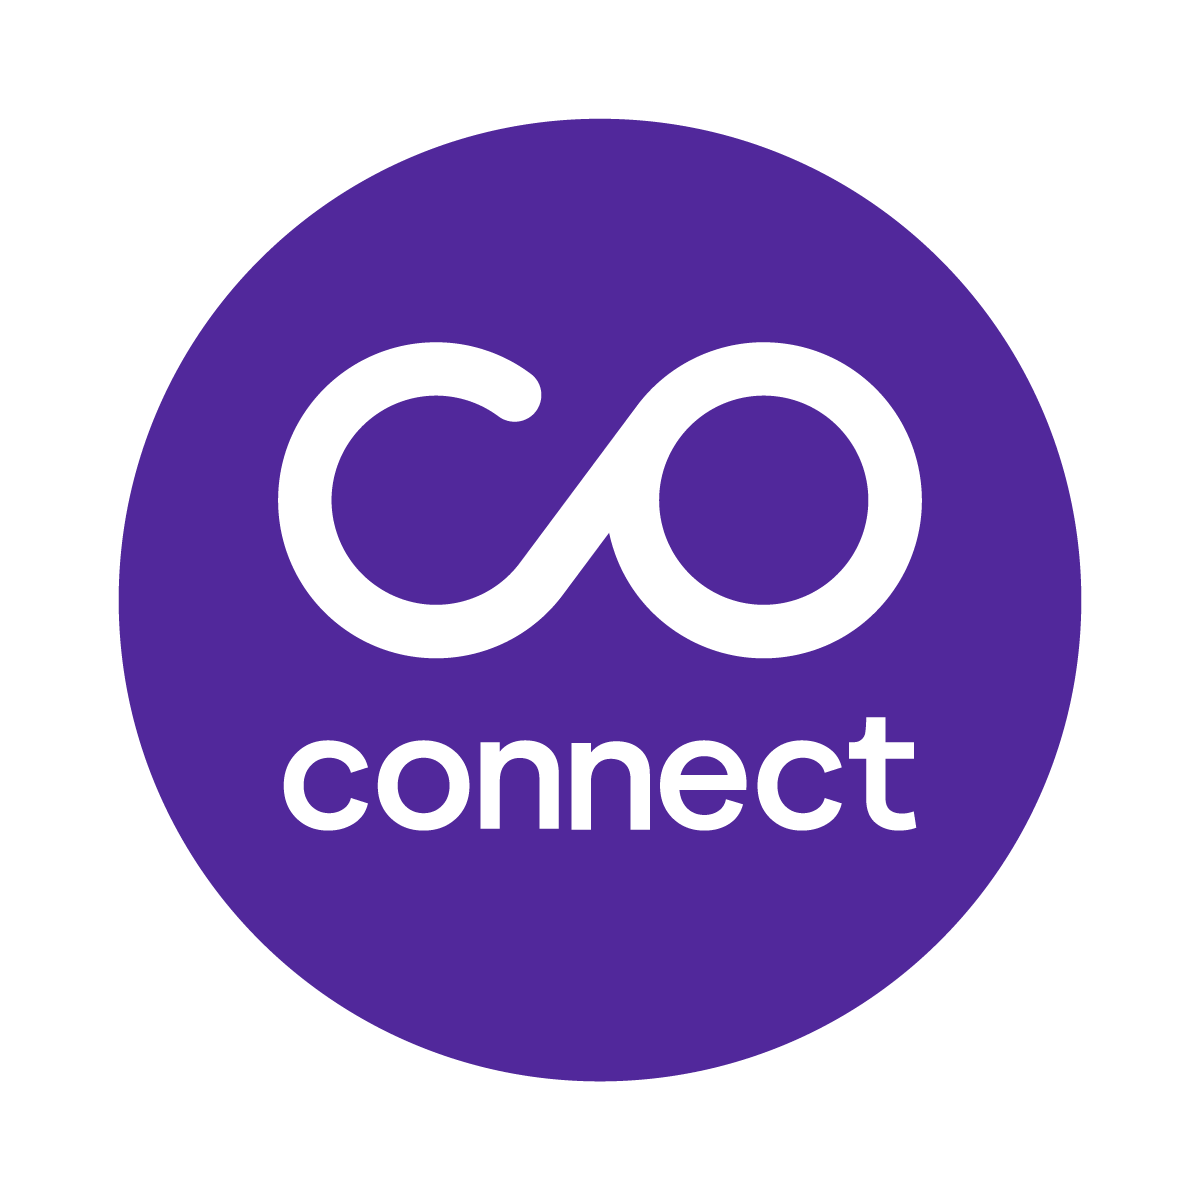 Coconnect Ltd